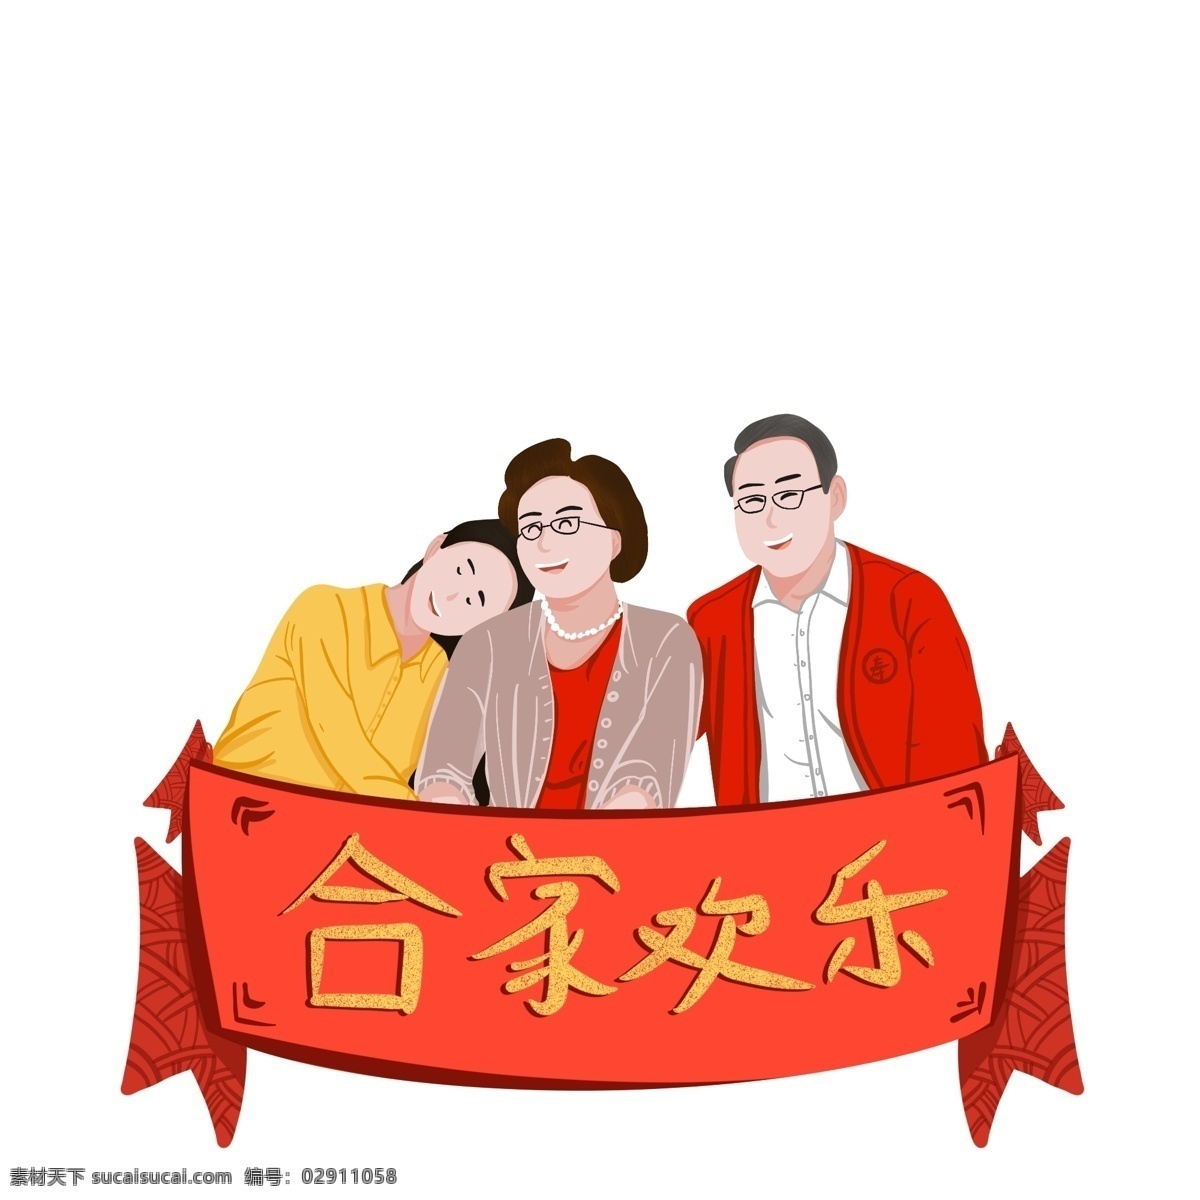 2019 猪年 新春 阖家欢乐 原创 插画 合家欢乐 春节 一家人 新年 喜庆